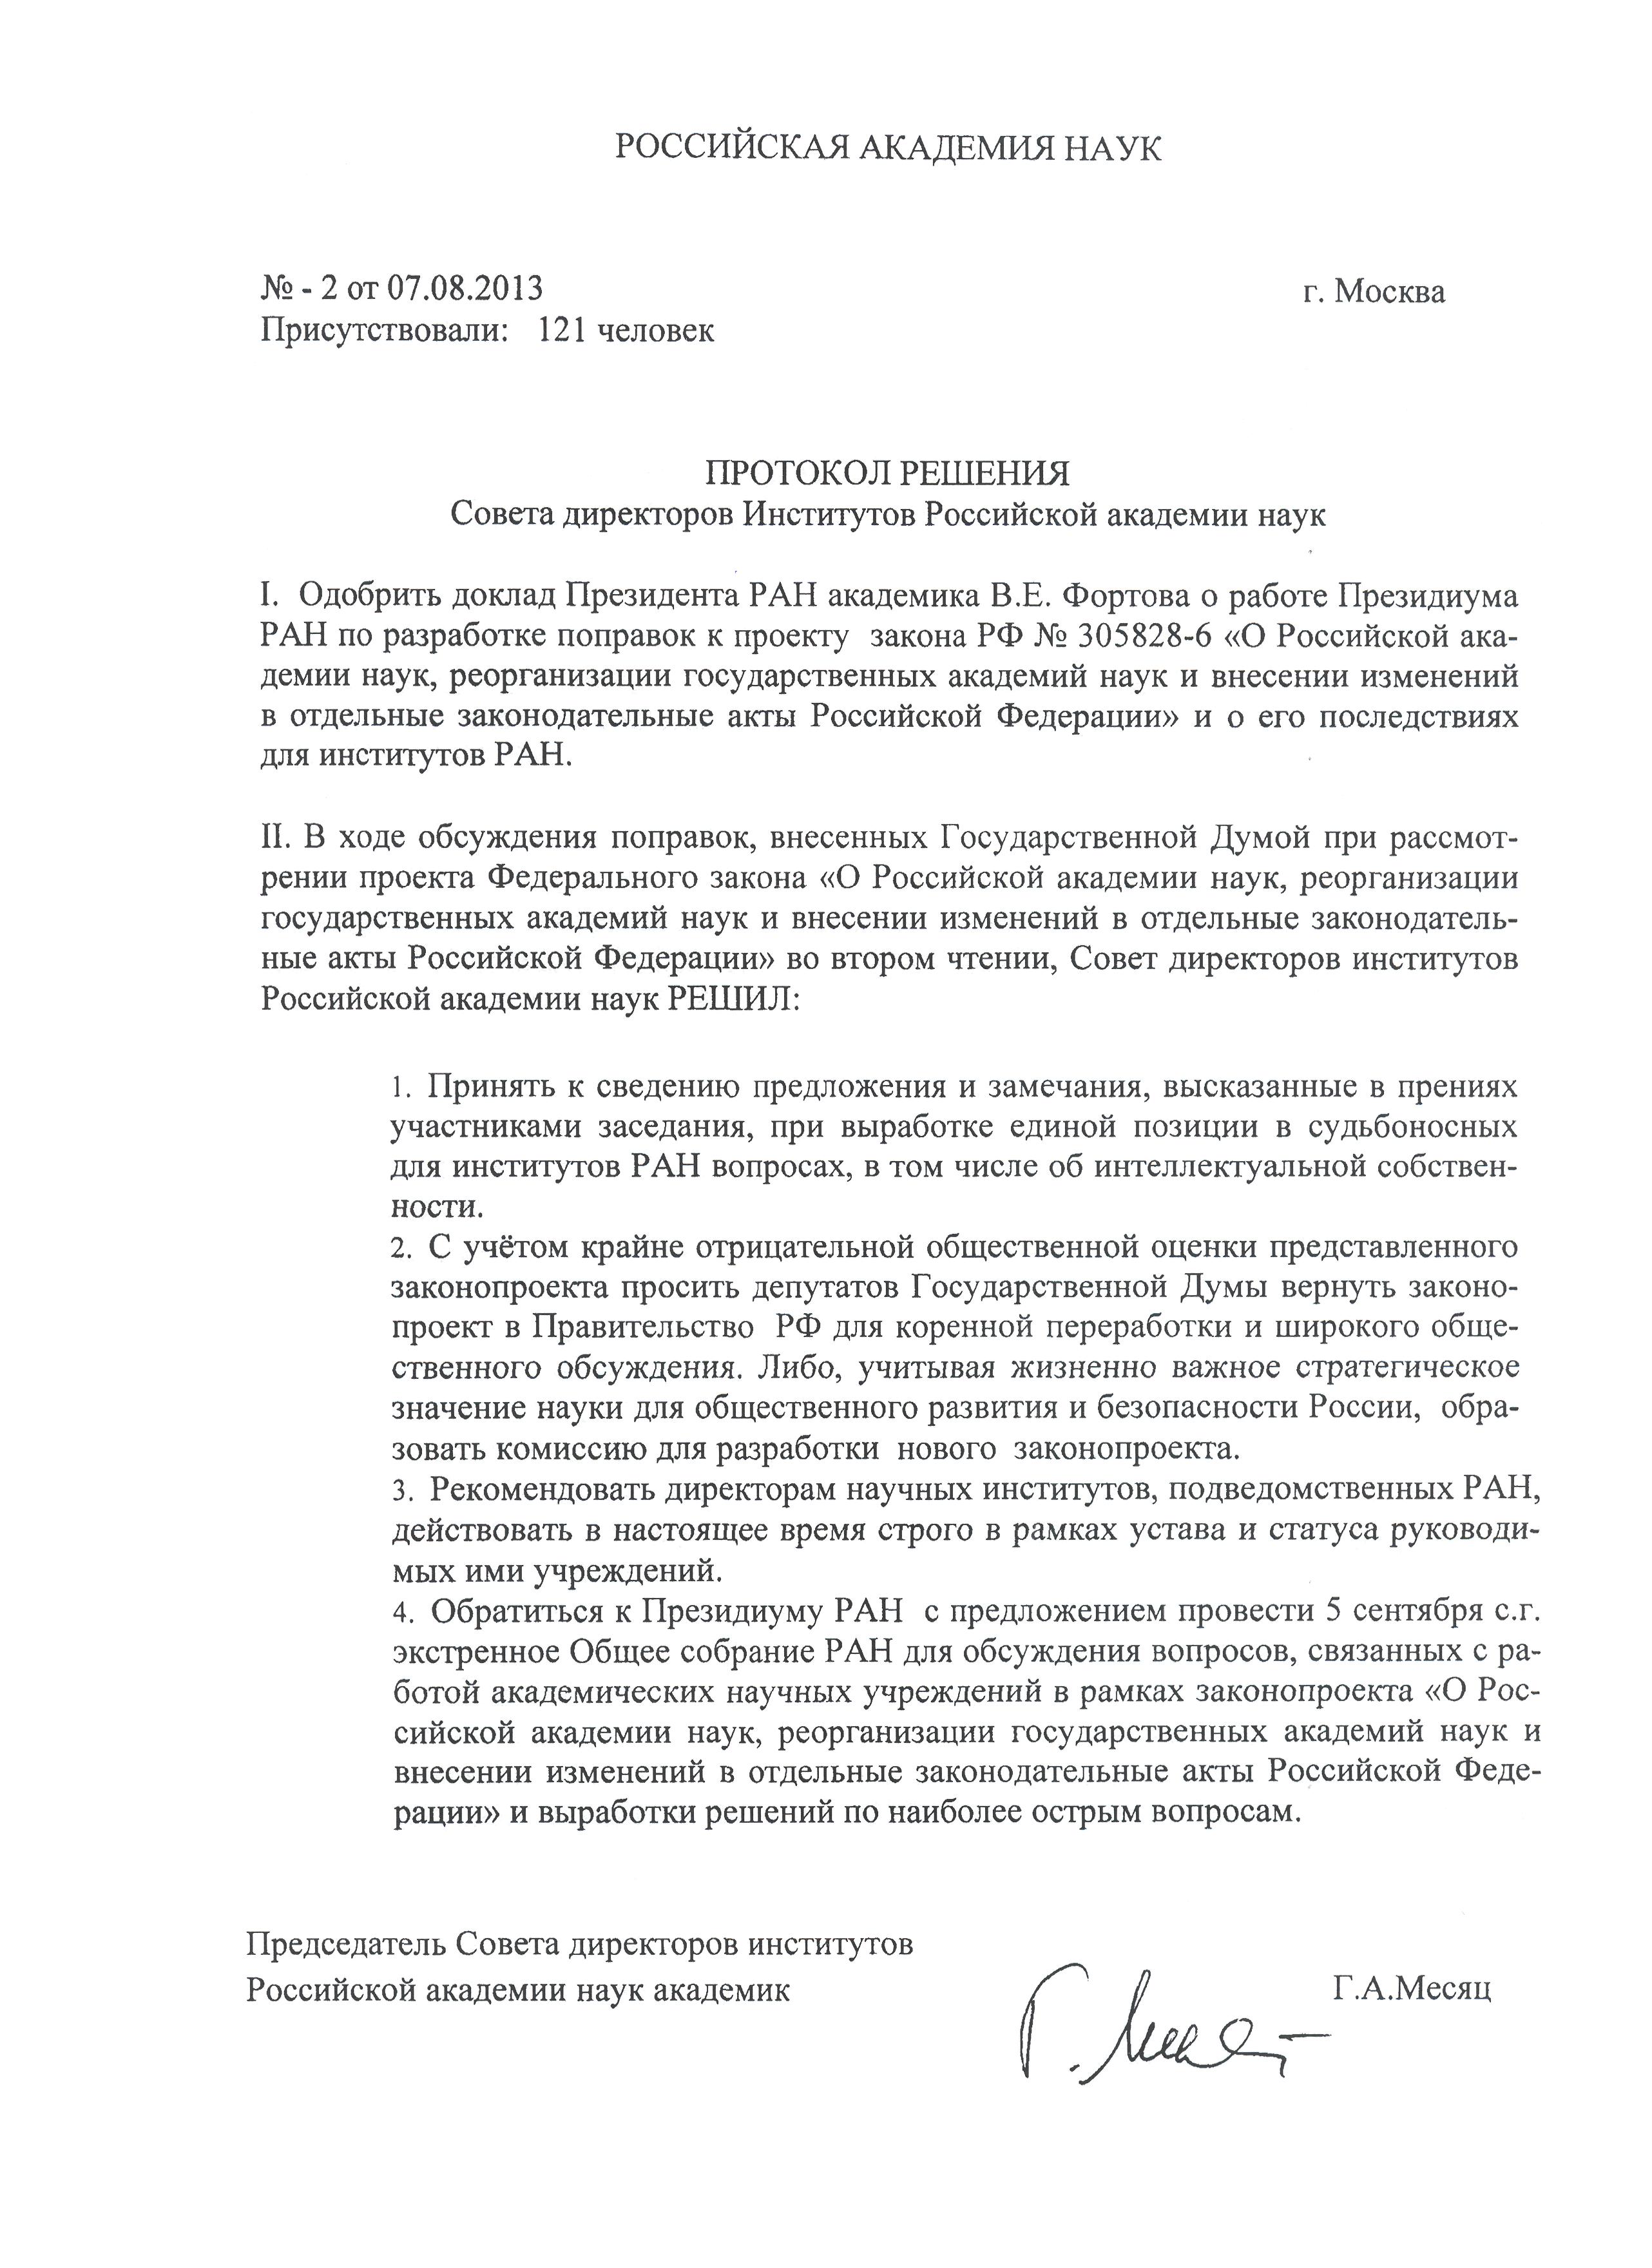 Протокол решения Совета директоров 7 августа 2013 г. (jpg, 786 Kб)